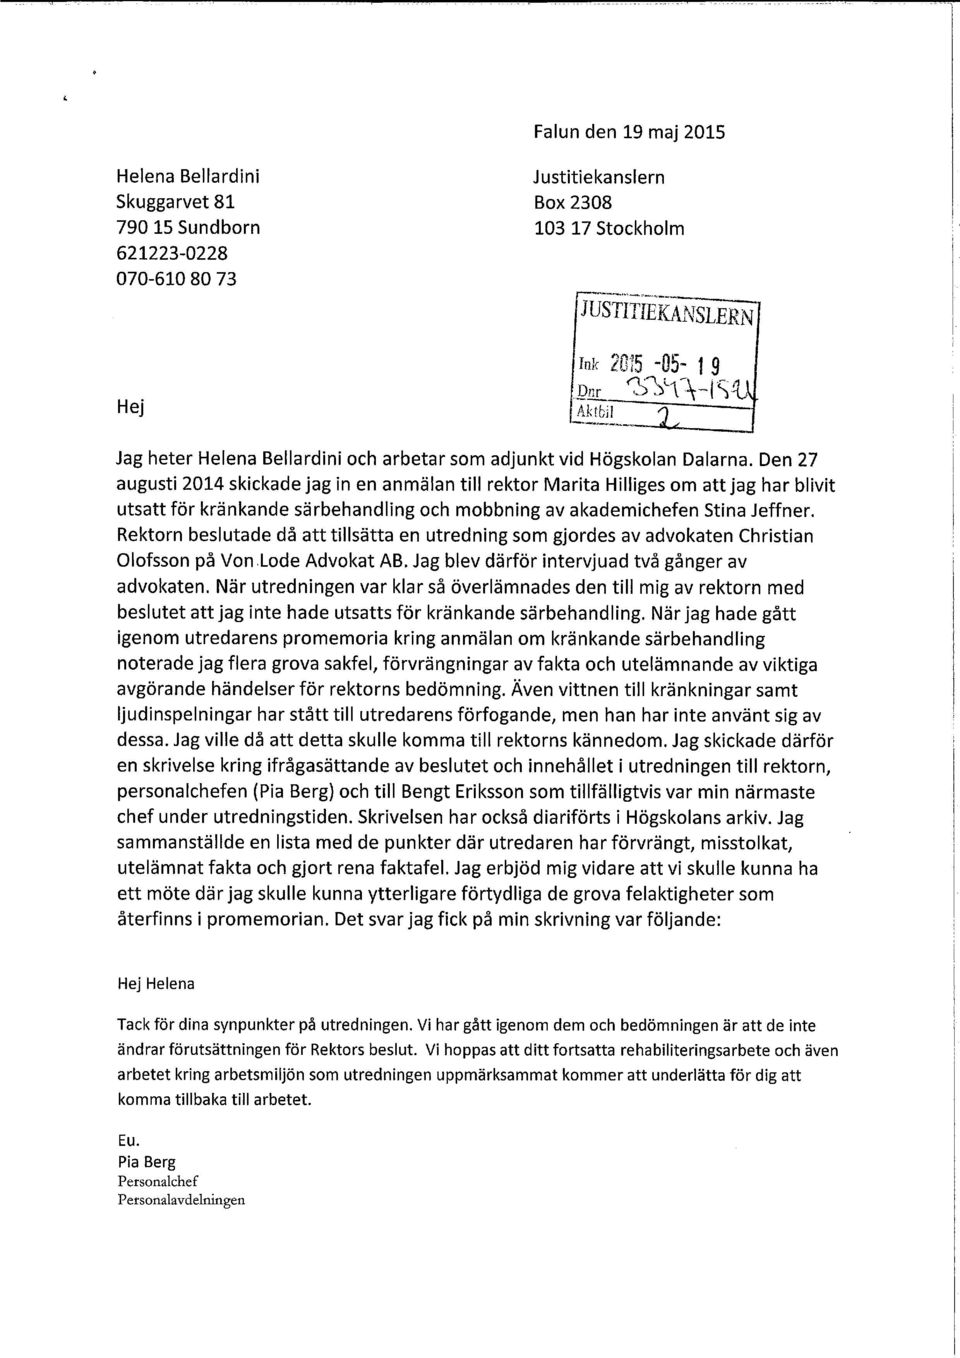 Den 27 augusti 2014 skickade jag in en anmälan till rektor Marita Hilliges om att jag har blivit utsatt för kränkande särbehandling och mobbning av akademichefen Stina Jeffner.